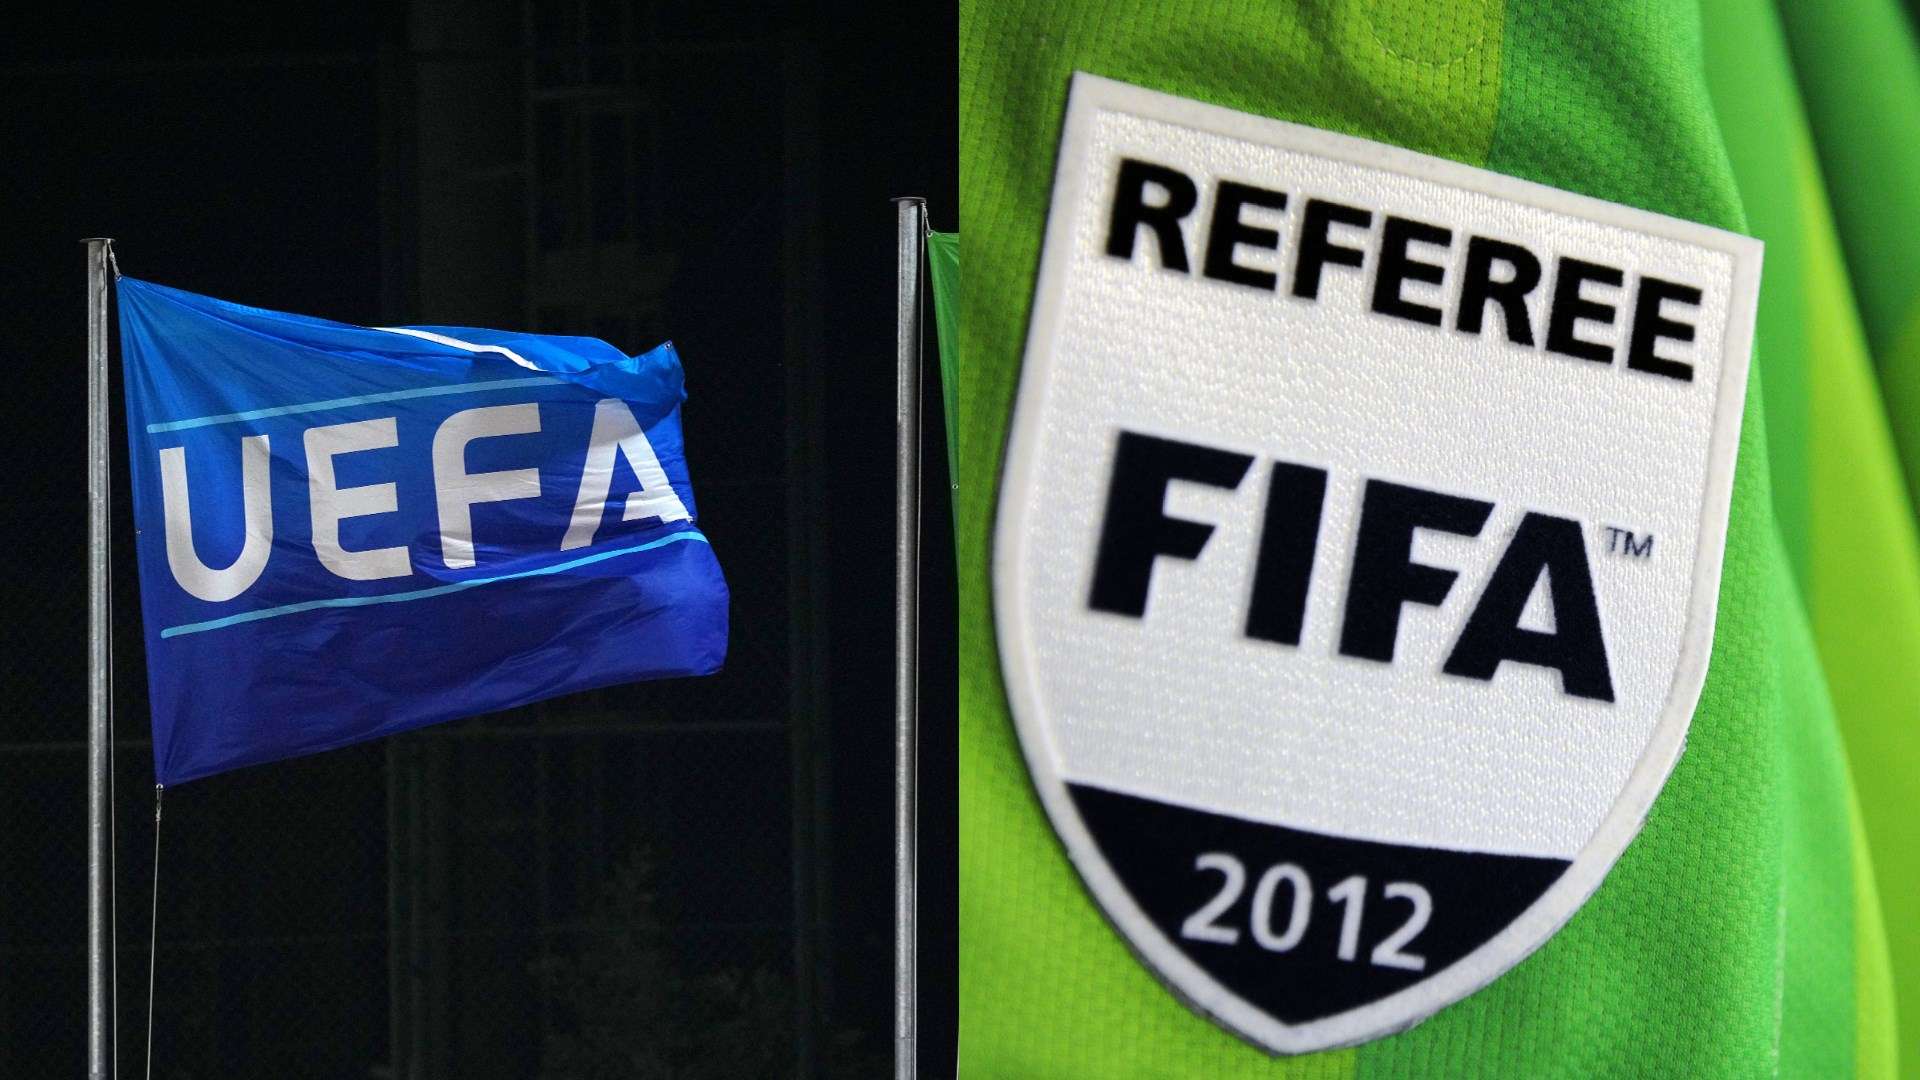 UEFA & FIFA